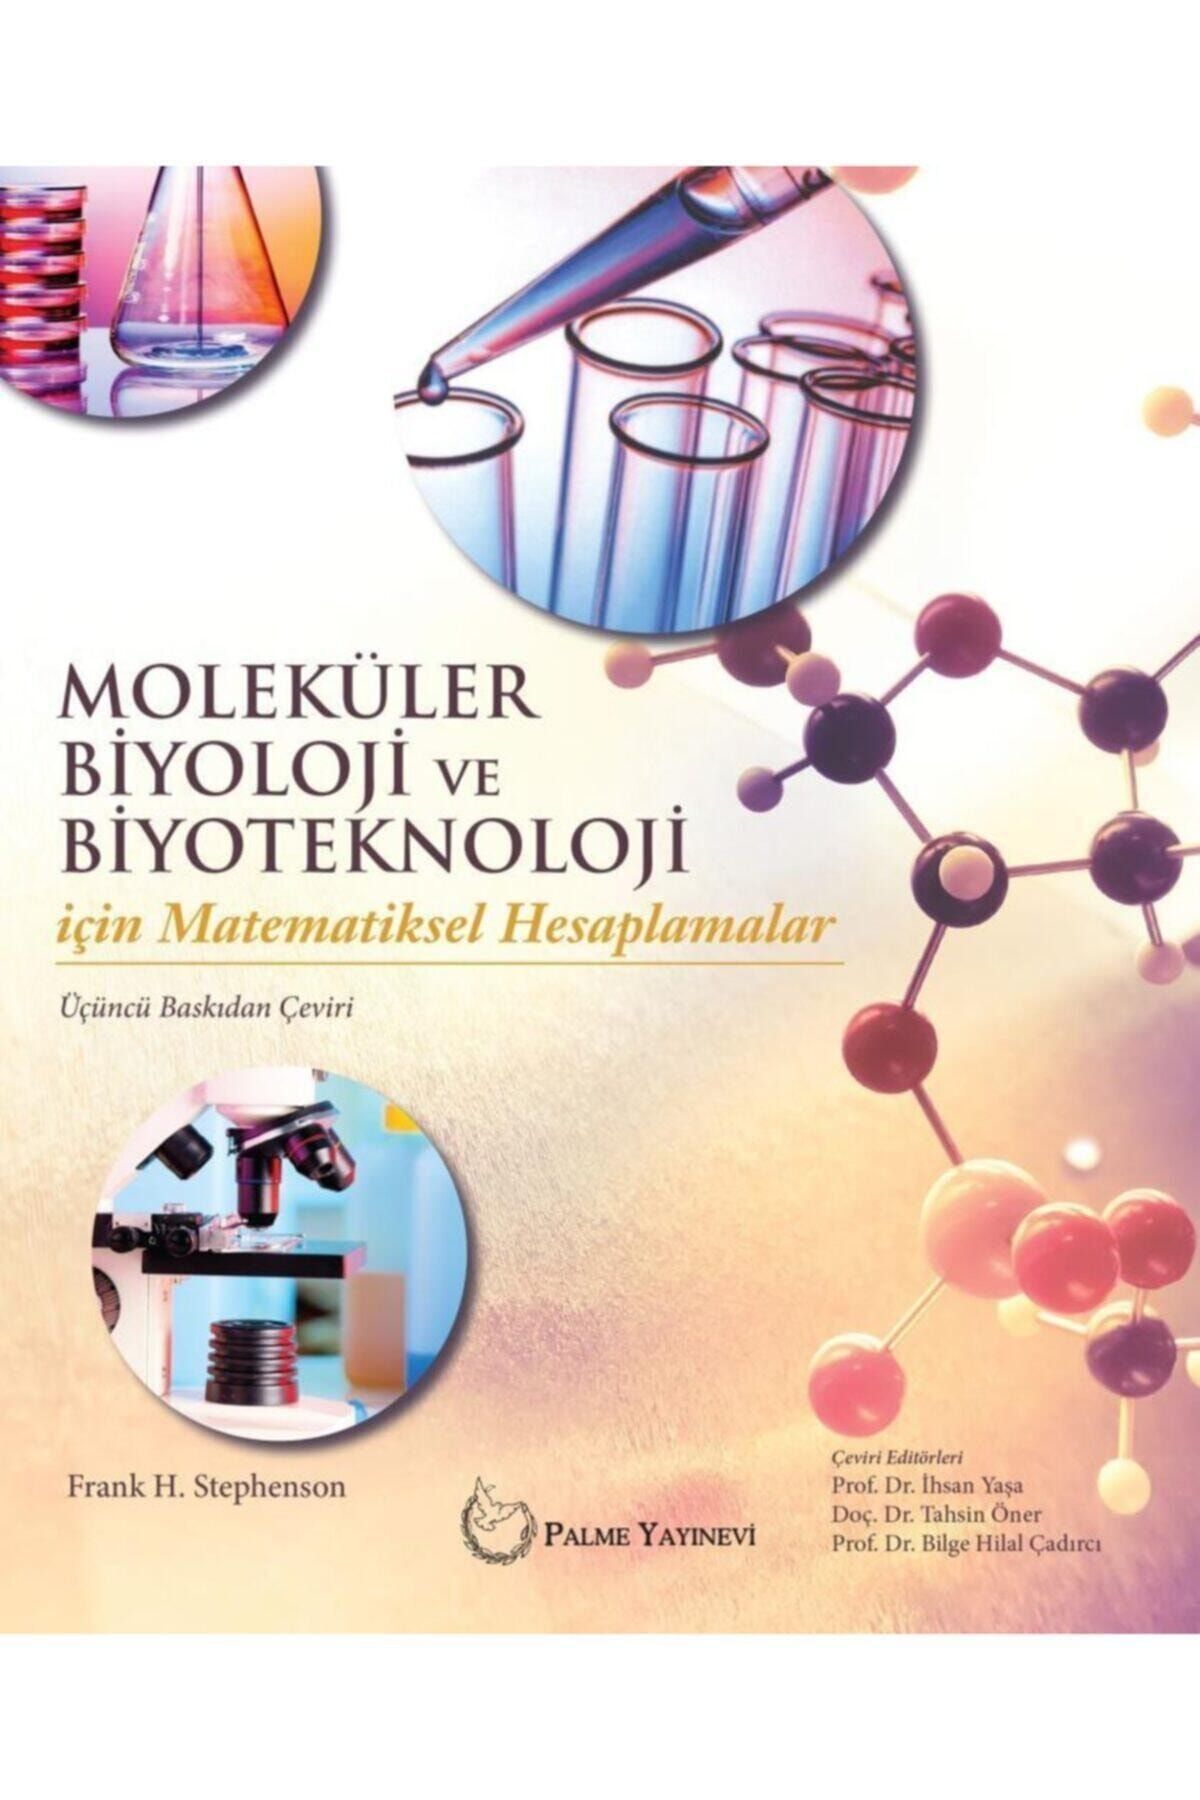 Palme Yayınevi Moleküler Biyoloji Ve Biyoteknoloji Için Matematiksel Hesaplamalar Kitabi - Frank H. Stephenson